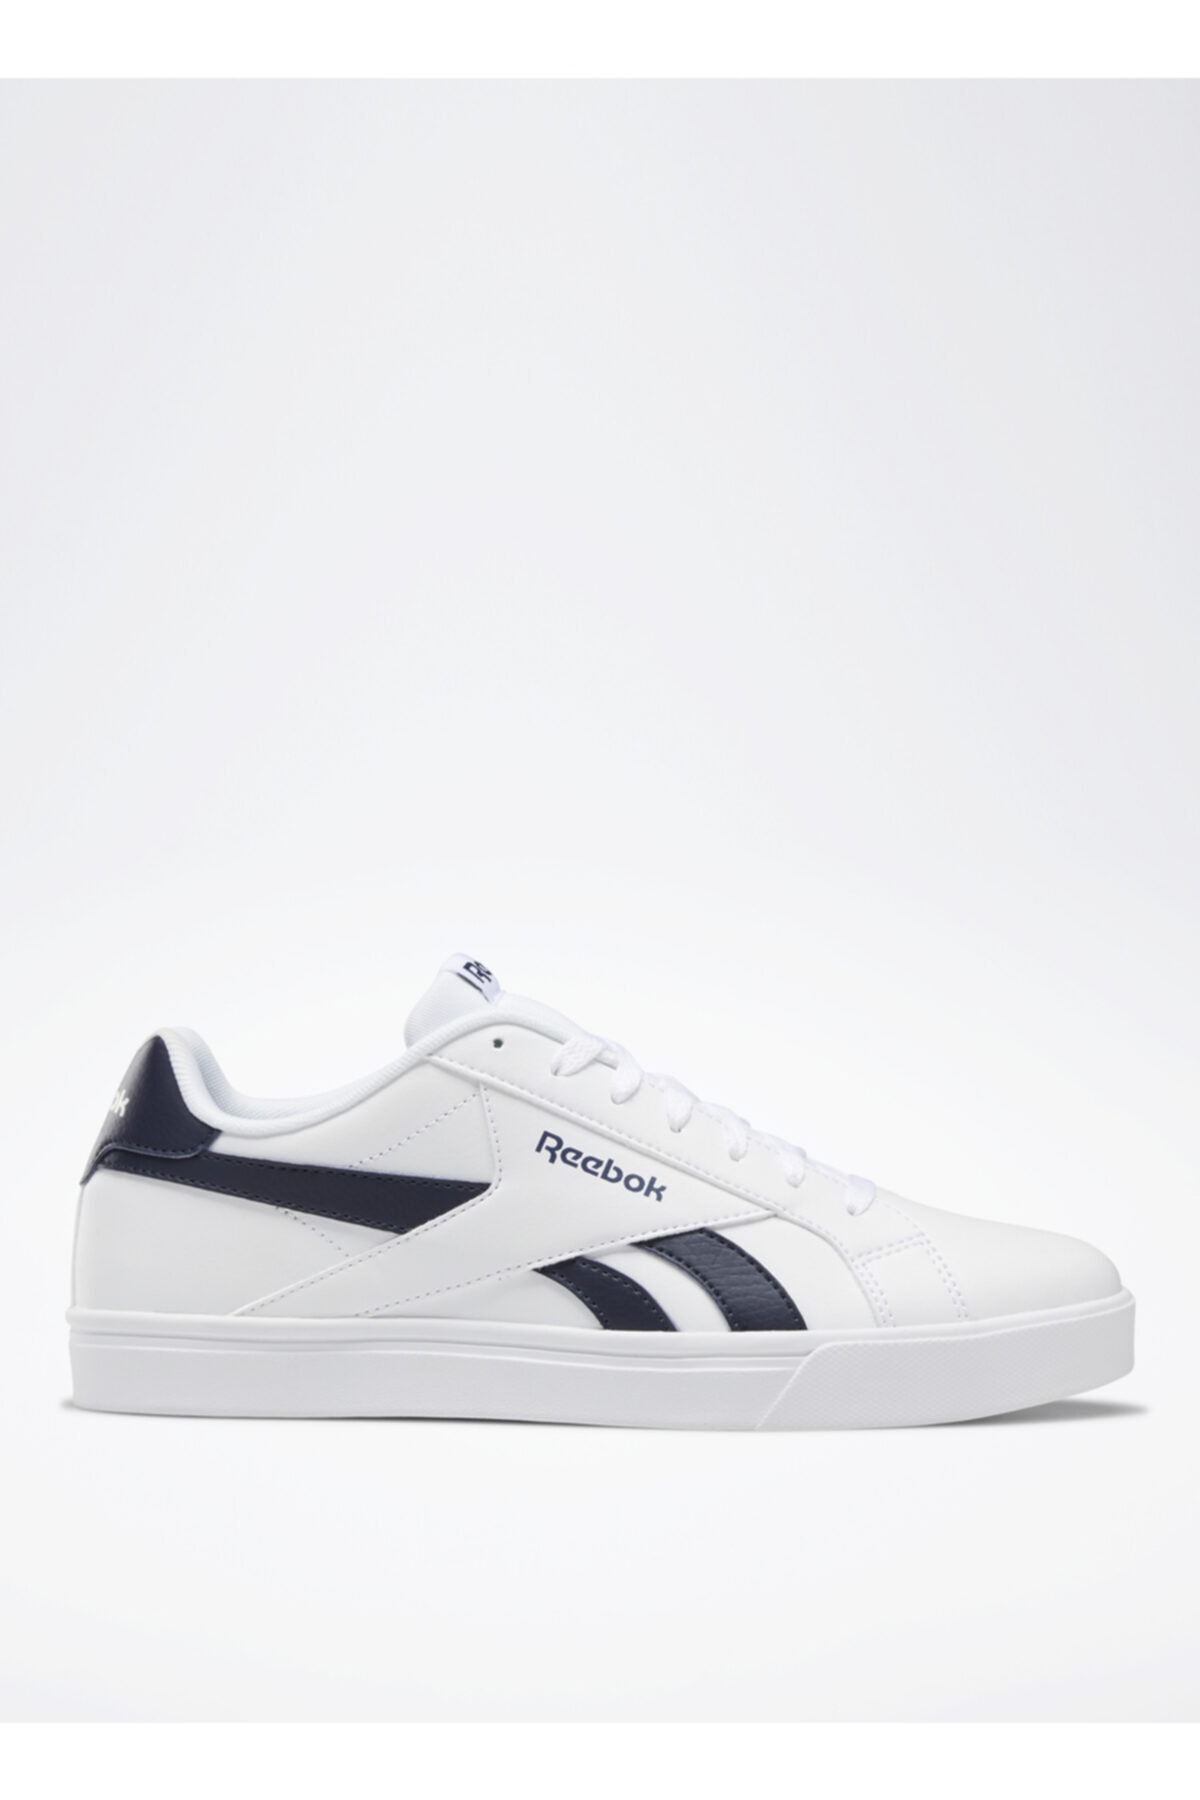 Reebok Beyaz Lifestyle Ayakkabı | 60%'YE KADAR İNDİRİM | ashingtoncameraclub.co.uk